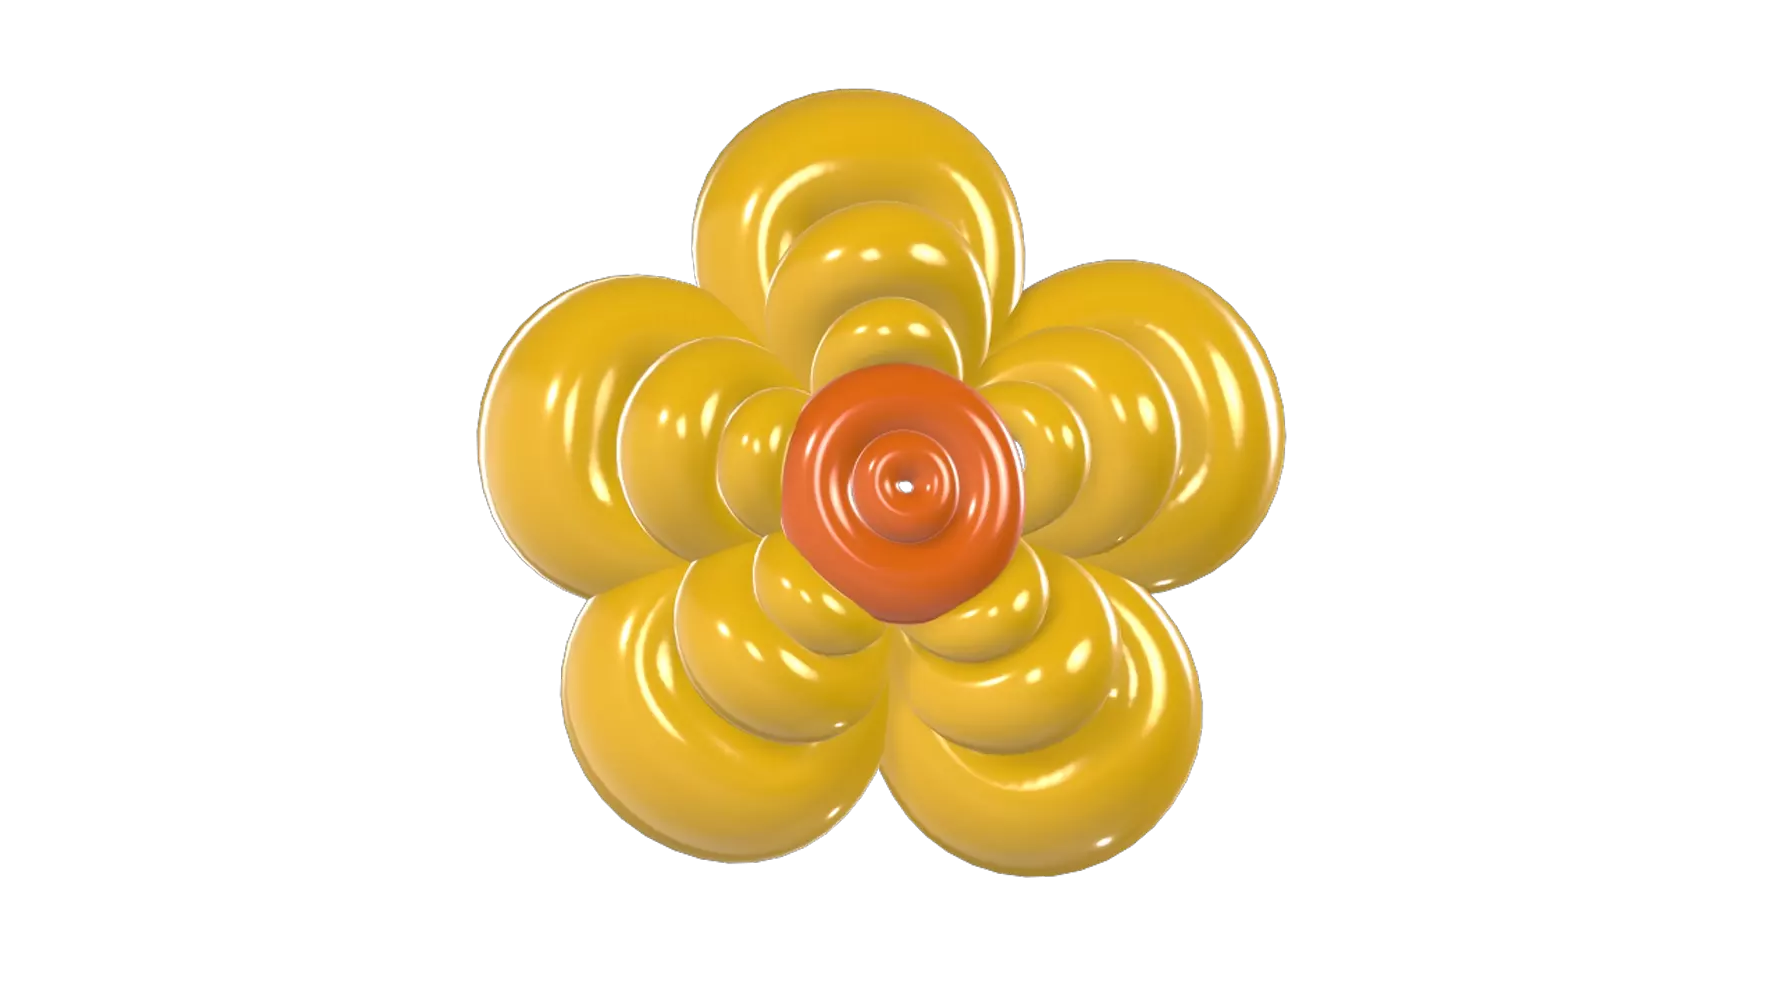 Buttercup Flower Balloon 3D Graphic